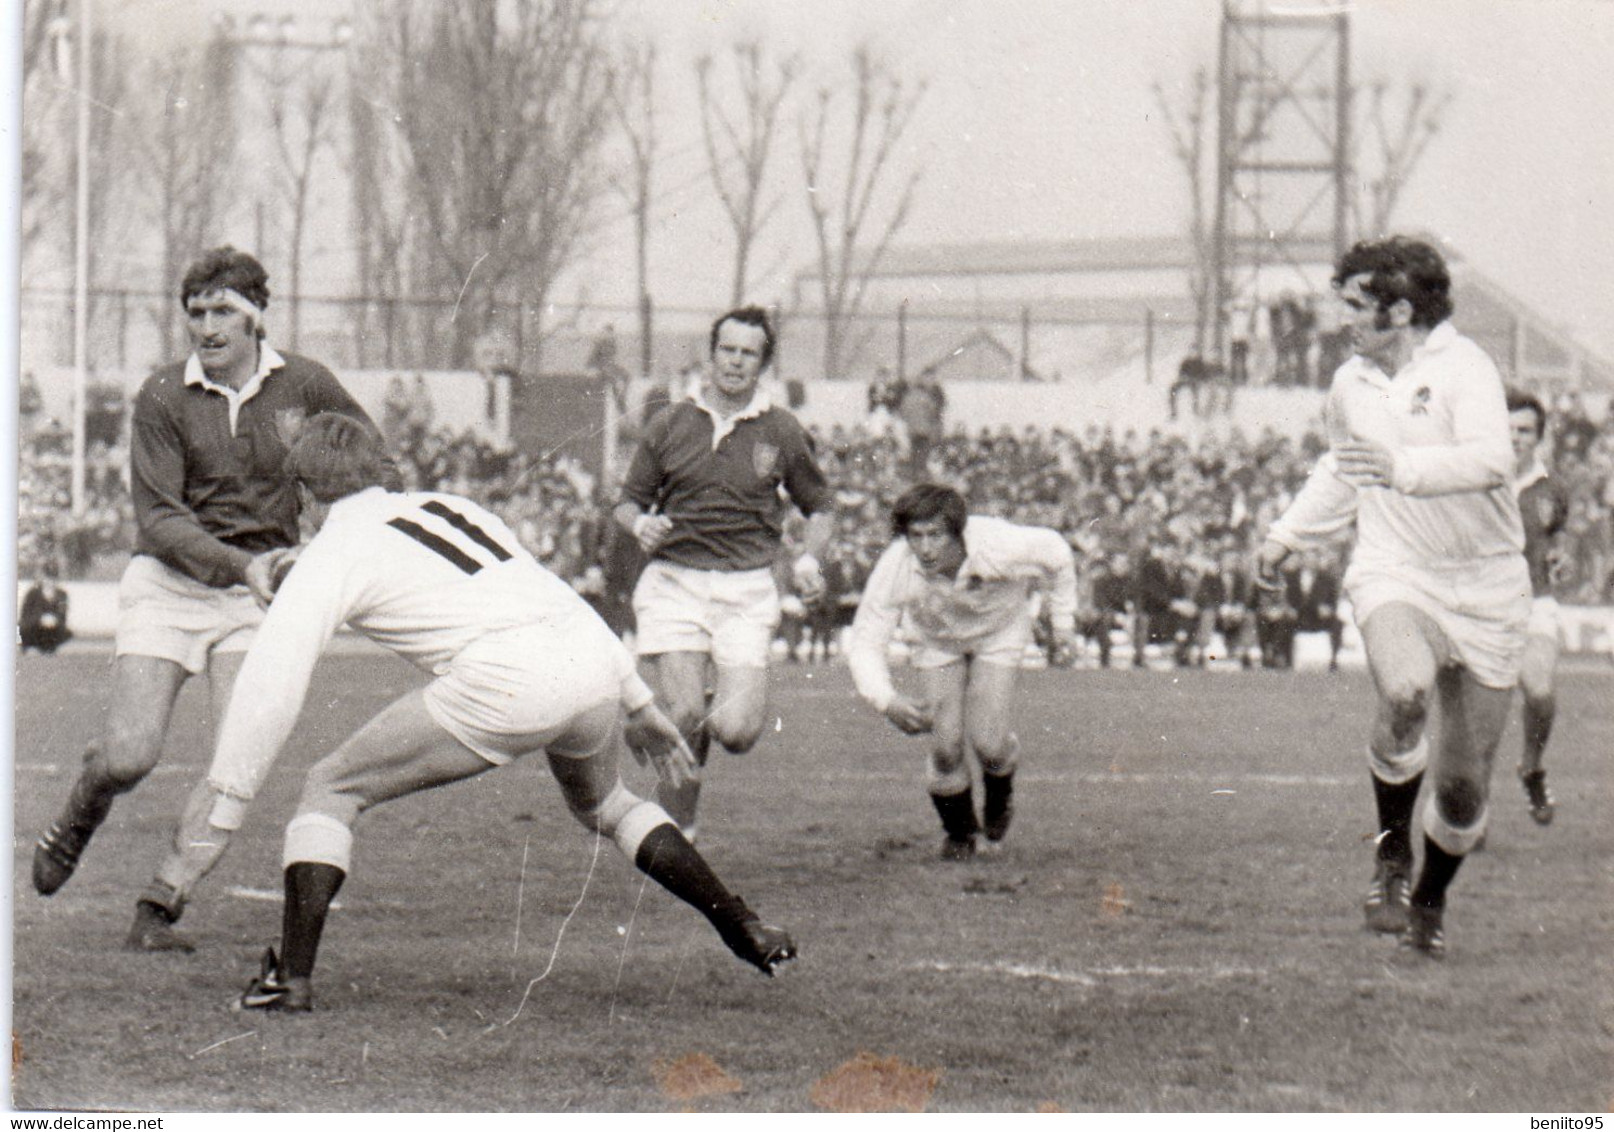 PHOTO Originale Du Match De Rugby FRANCE Contre ANGLETERRE En 1972 à Colombes. - Rugby